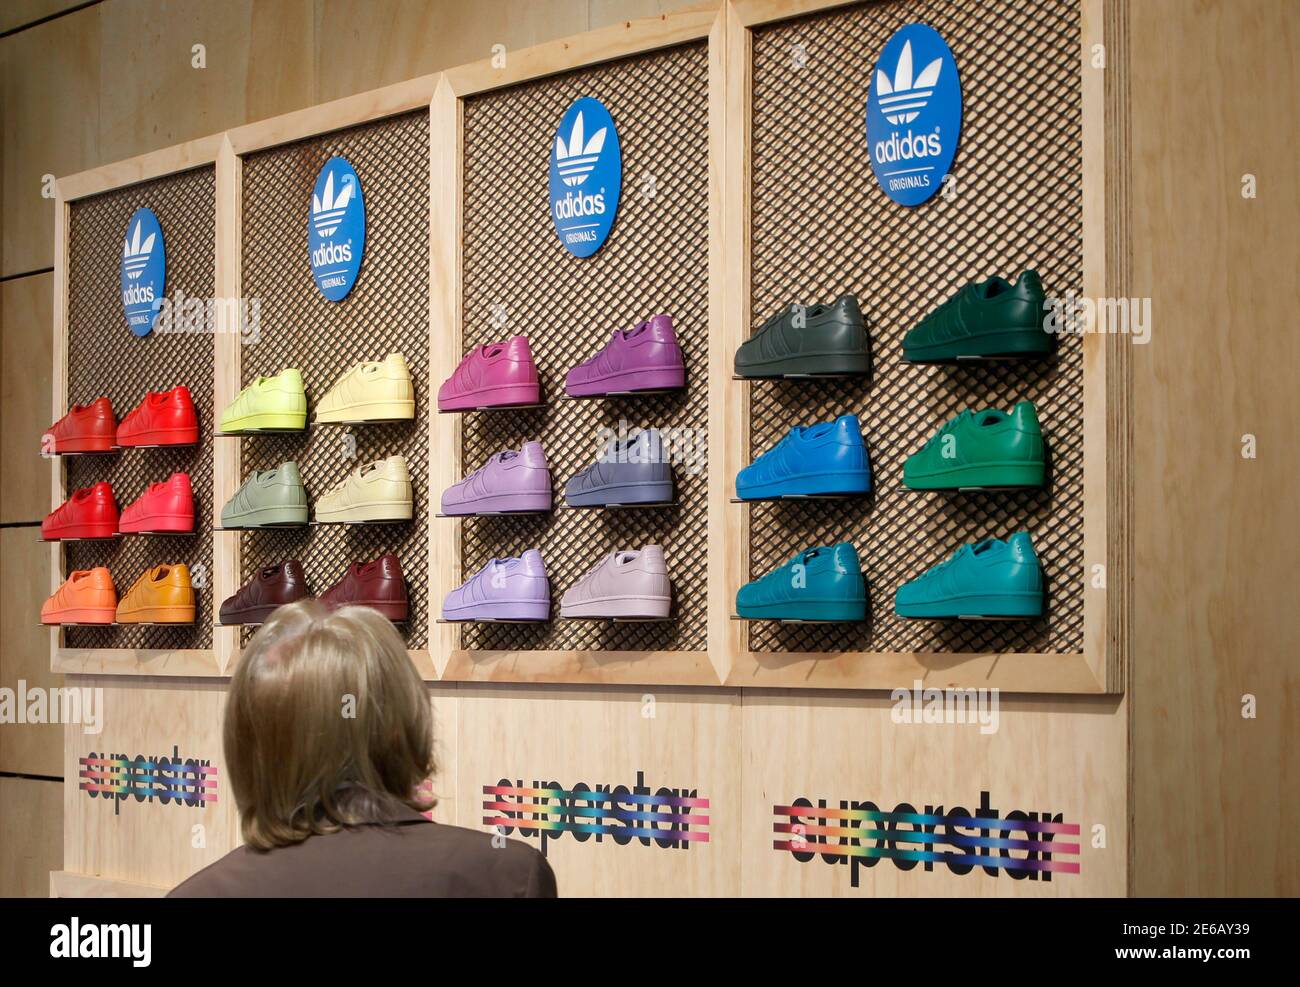 Ein Aktionär von Adidas, dem zweitgrößten Sportbekleidungsunternehmen der  Welt, blickt auf die Schuhe während der Firmenhauptversammlung im  nordbayerischen Fürth bei Nürnberg, Deutschland, am 7. Mai 2015.  REUTERS/Michaela Rehle Stockfotografie - Alamy